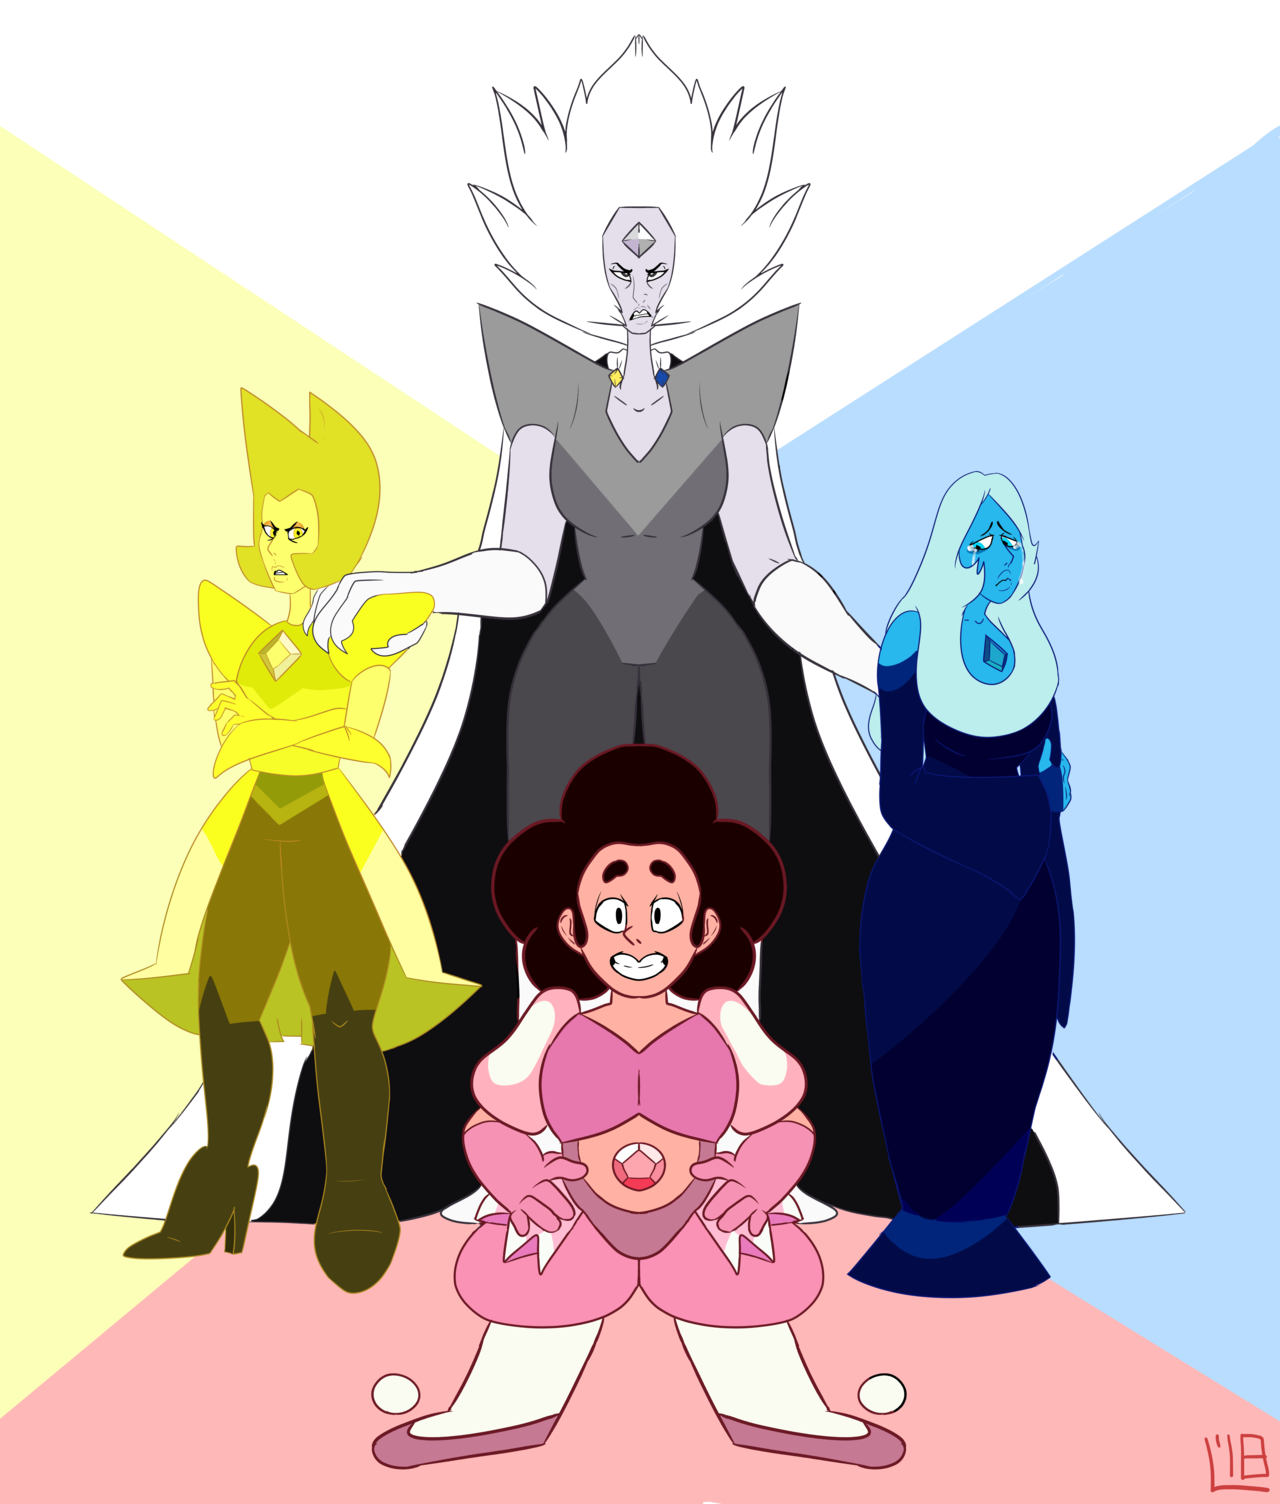 The New Diamond Authority